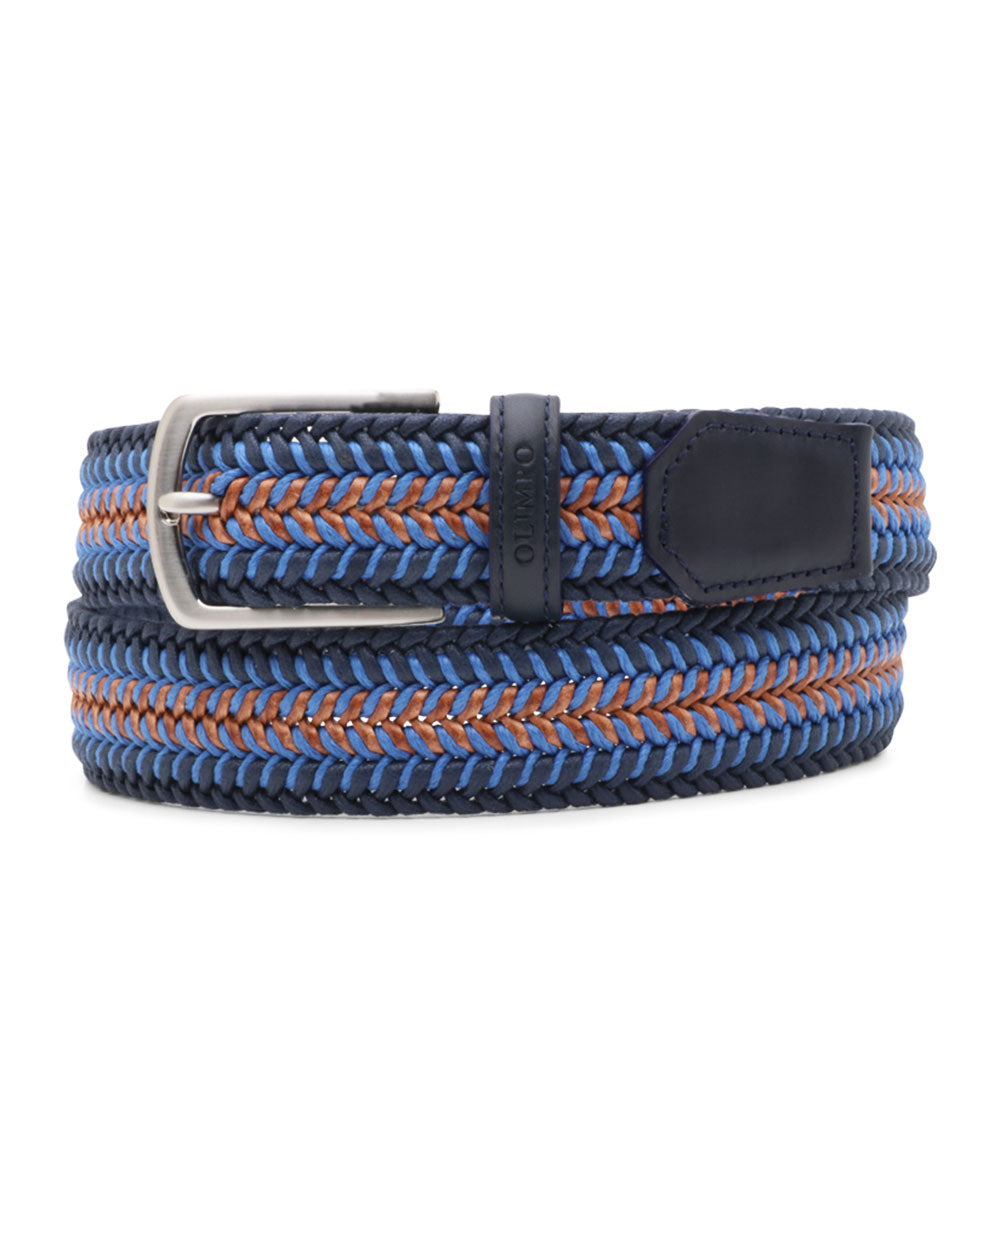 Olimpo Woven Belt in Navy Blue and Blue – Stanley Korshak